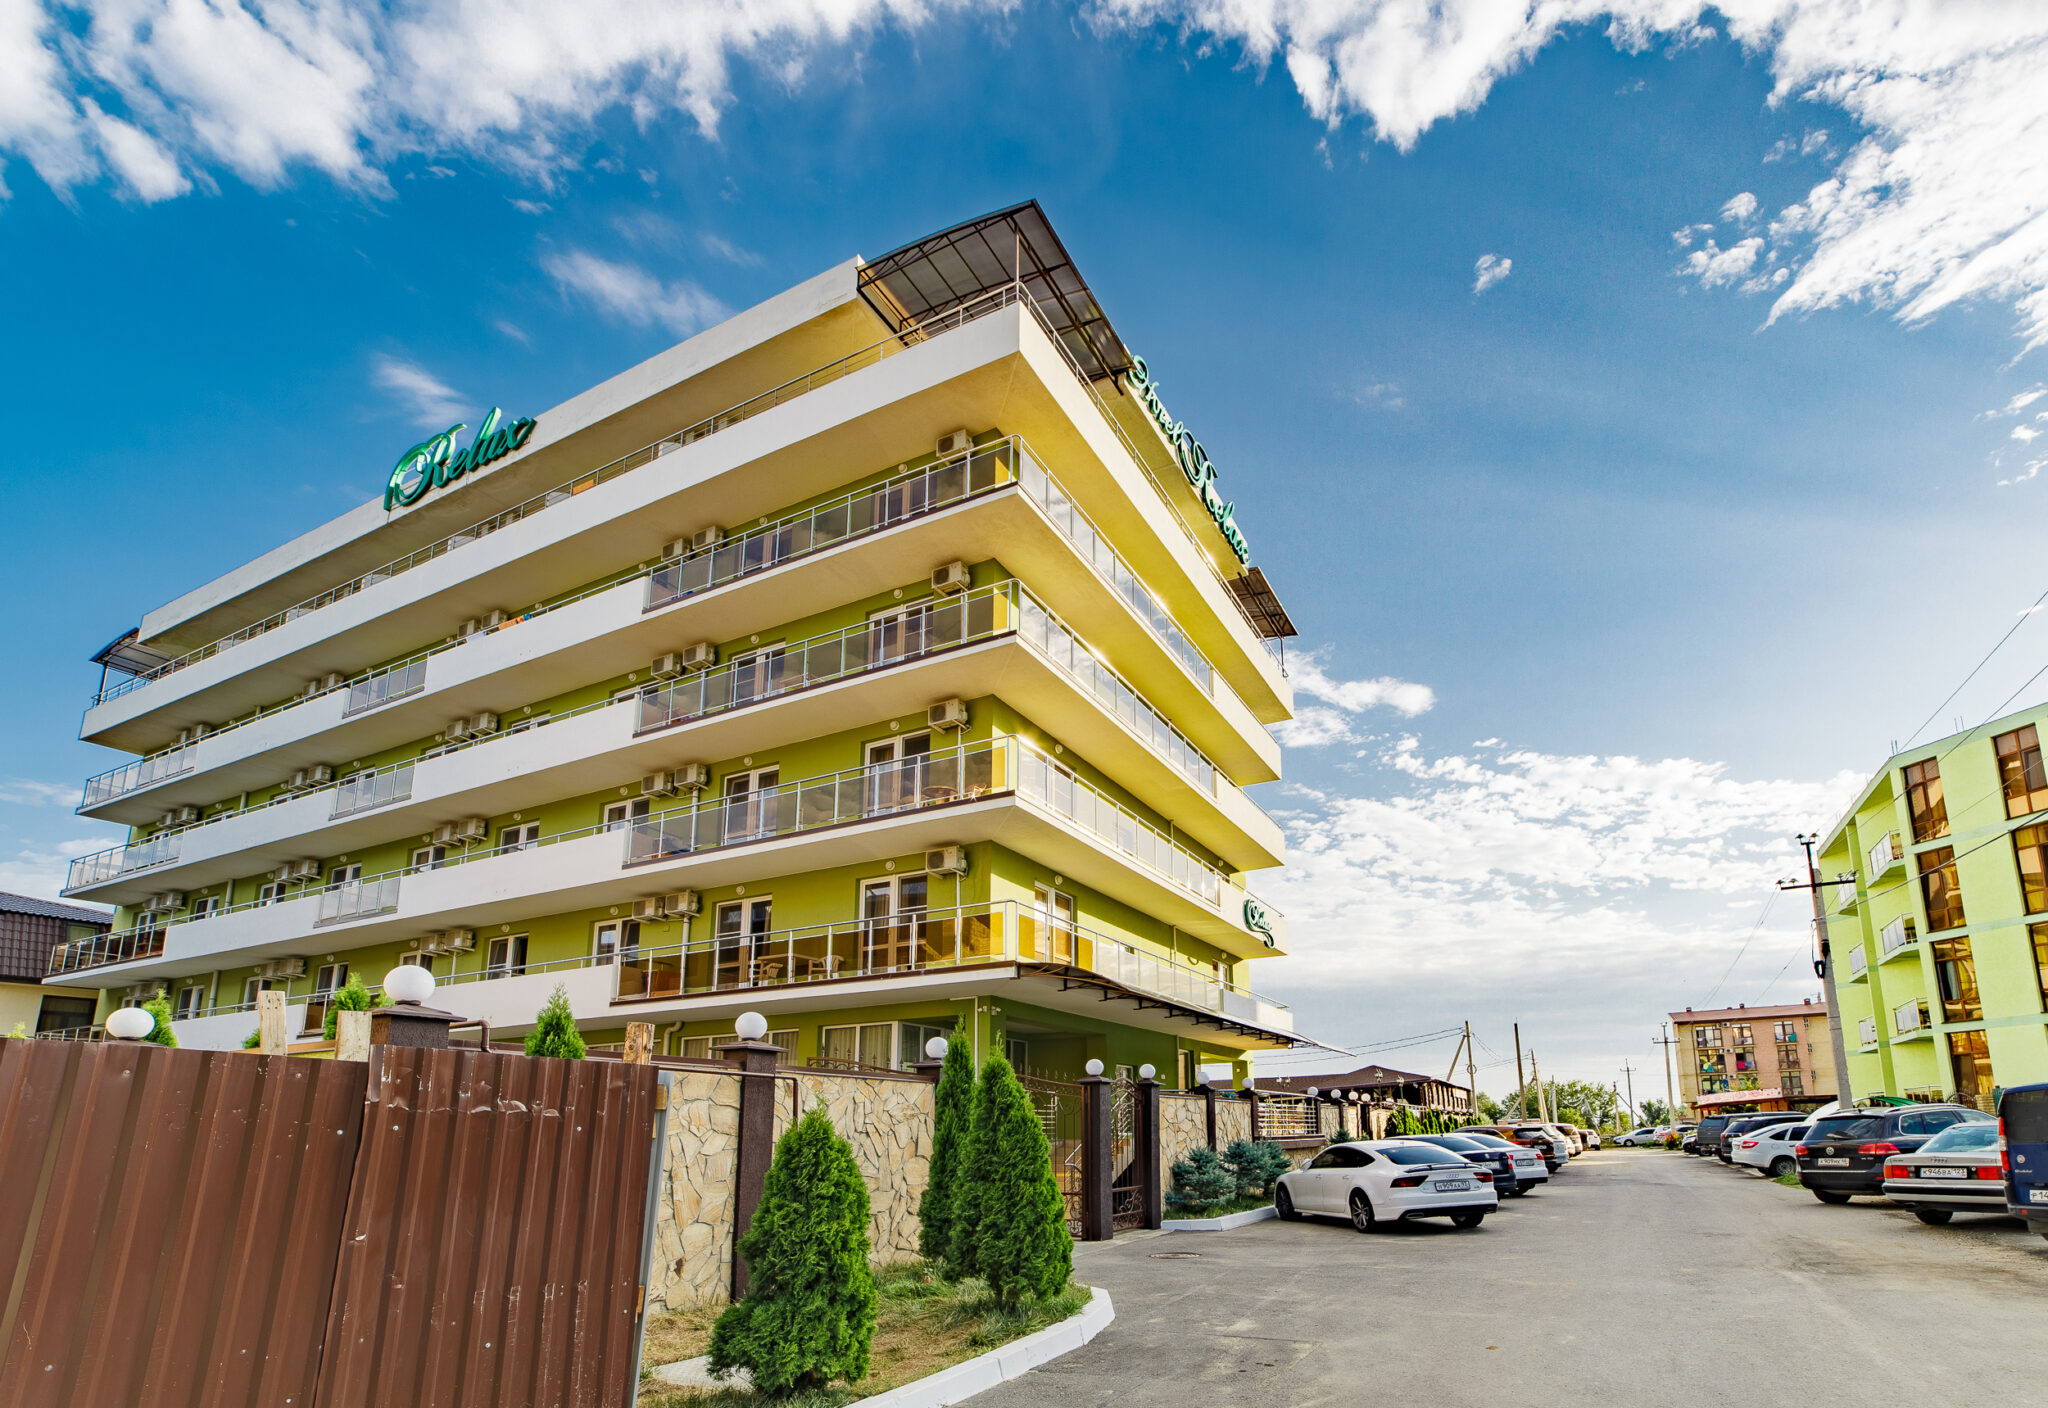 Отель «Релакс» в Витязево, Анапа. Фото с сайта отеля.